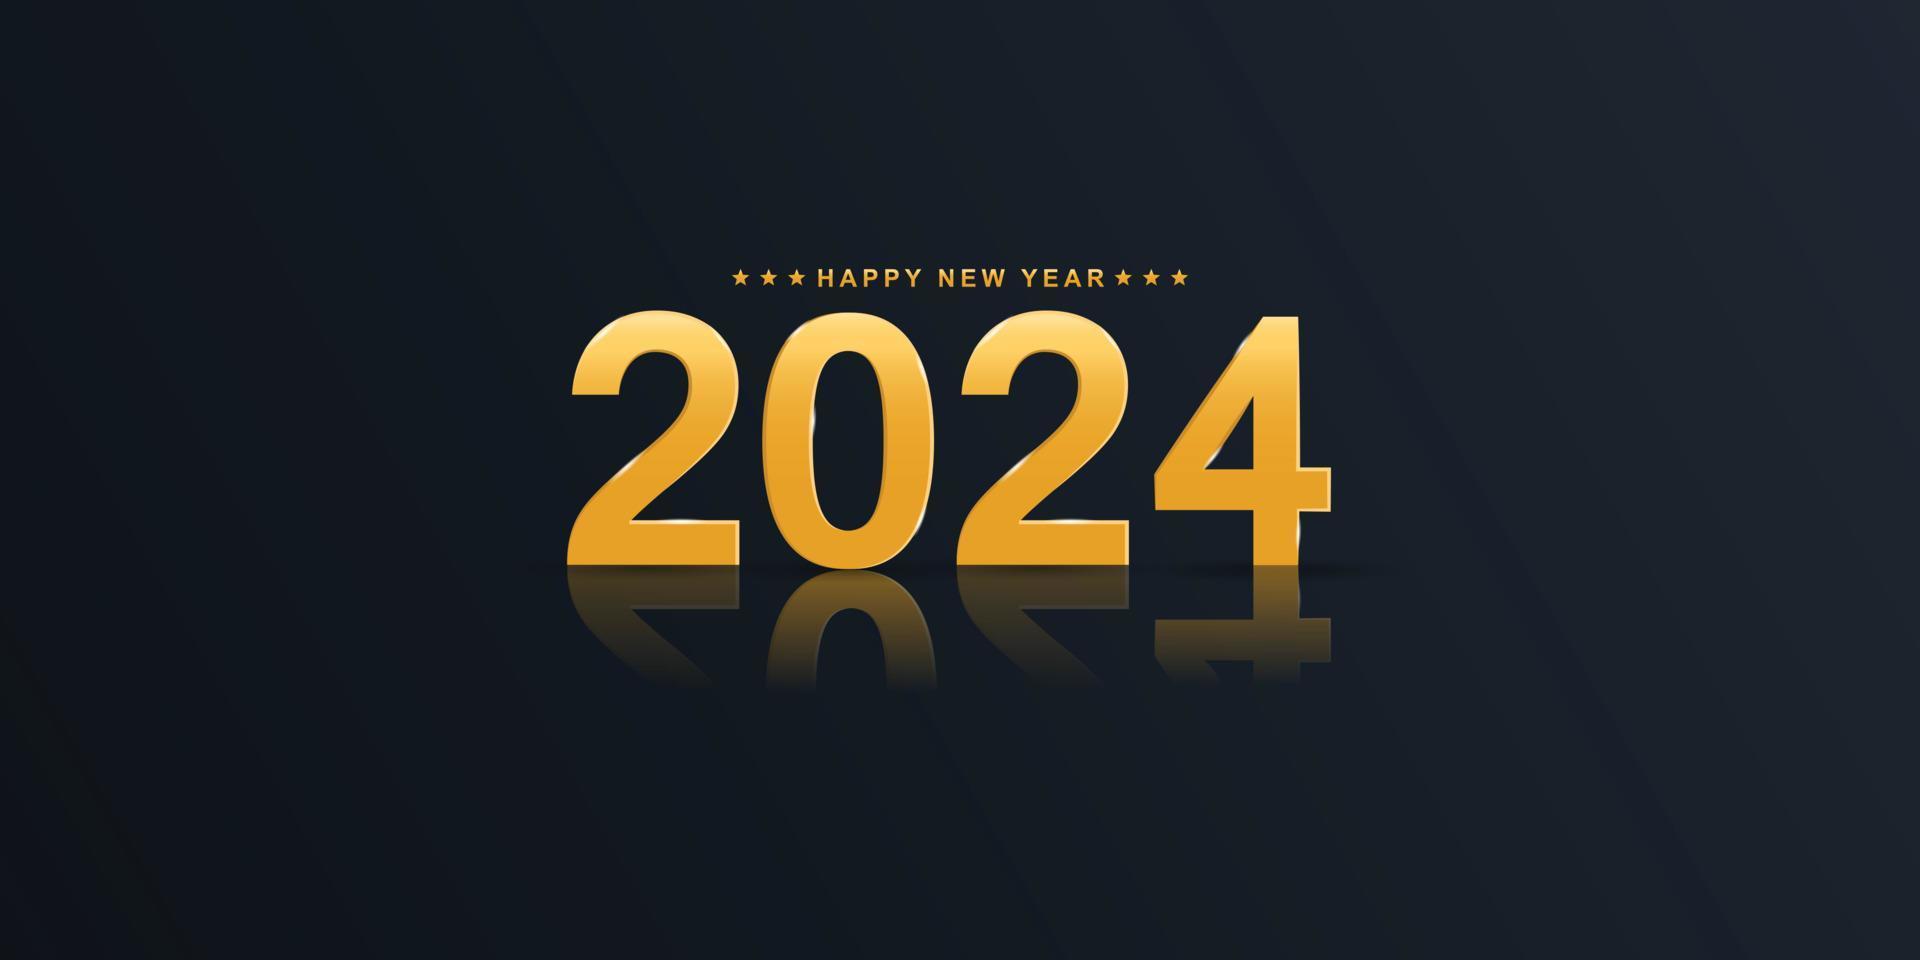 2024 Lycklig ny år elegant design - vektor illustration av gyllene 2024 logotyp tal på svart bakgrund - perfekt typografi för 2024 spara de datum lyx mönster och ny år firande.